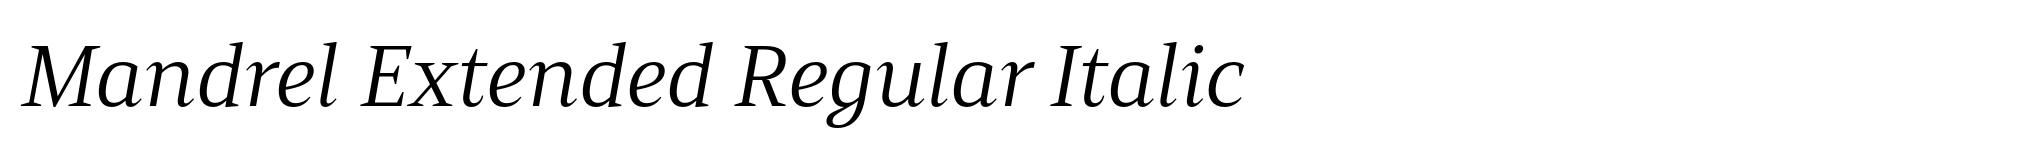 Mandrel Extended Regular Italic image